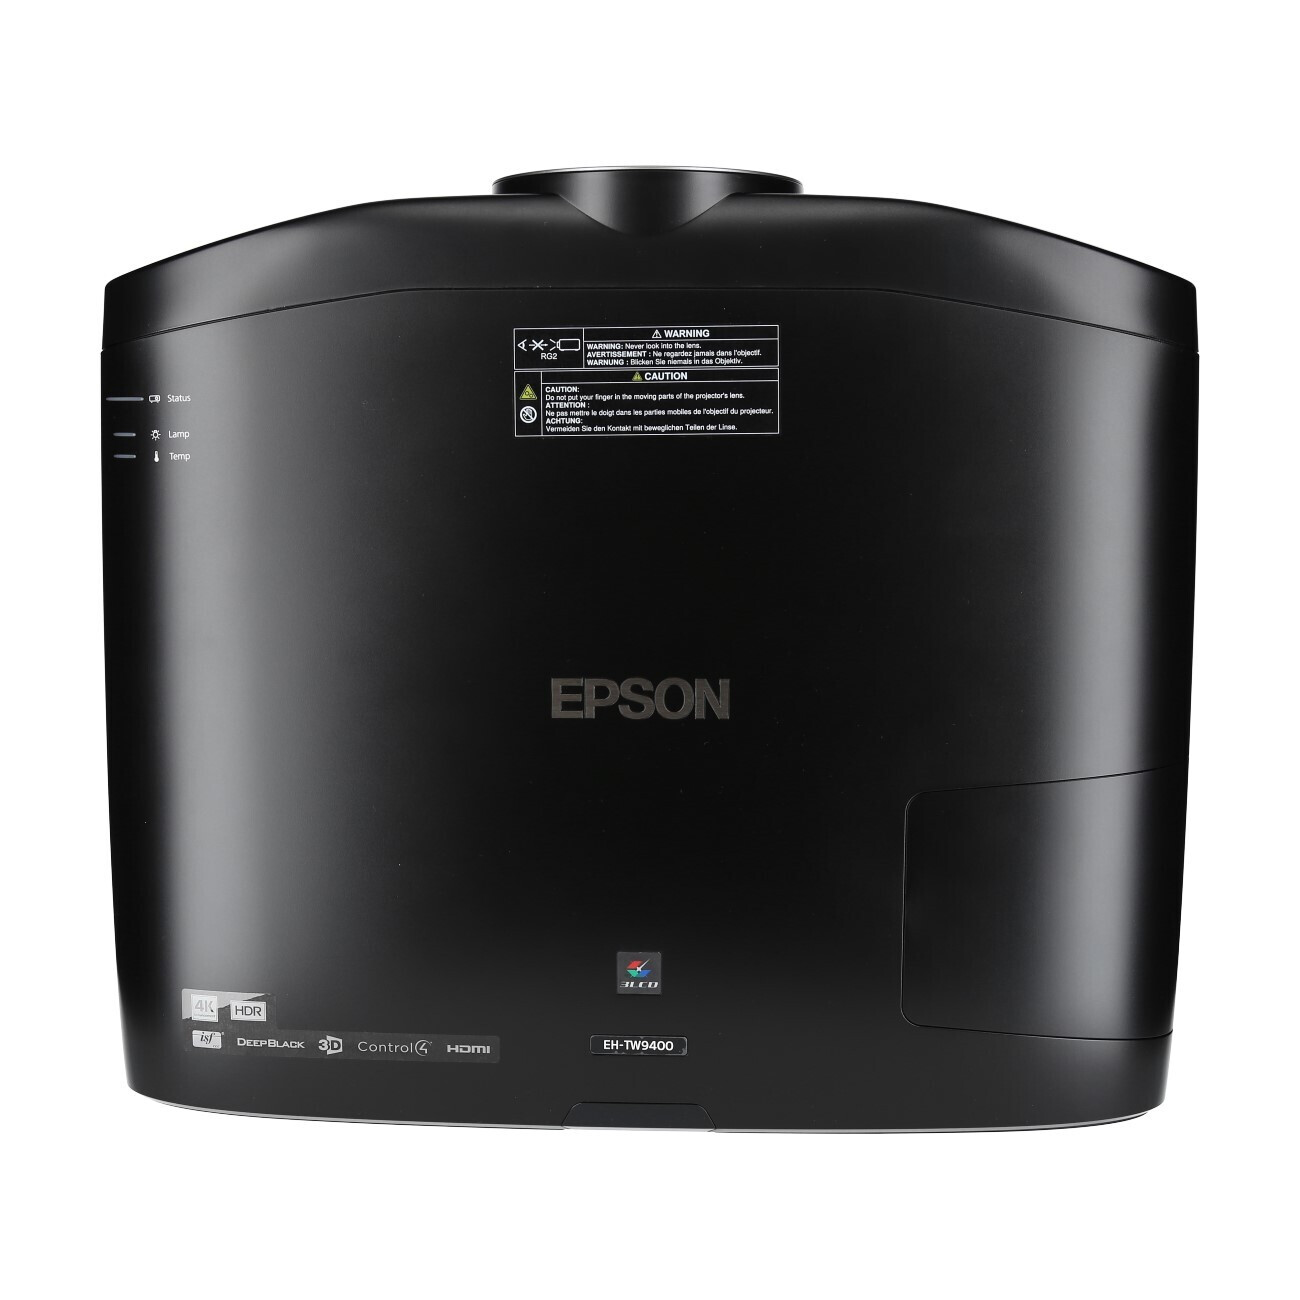 Vorschau: Epson EH-TW9400 4K highend Beamer mit 2600 ANSI-Lumen - Demo